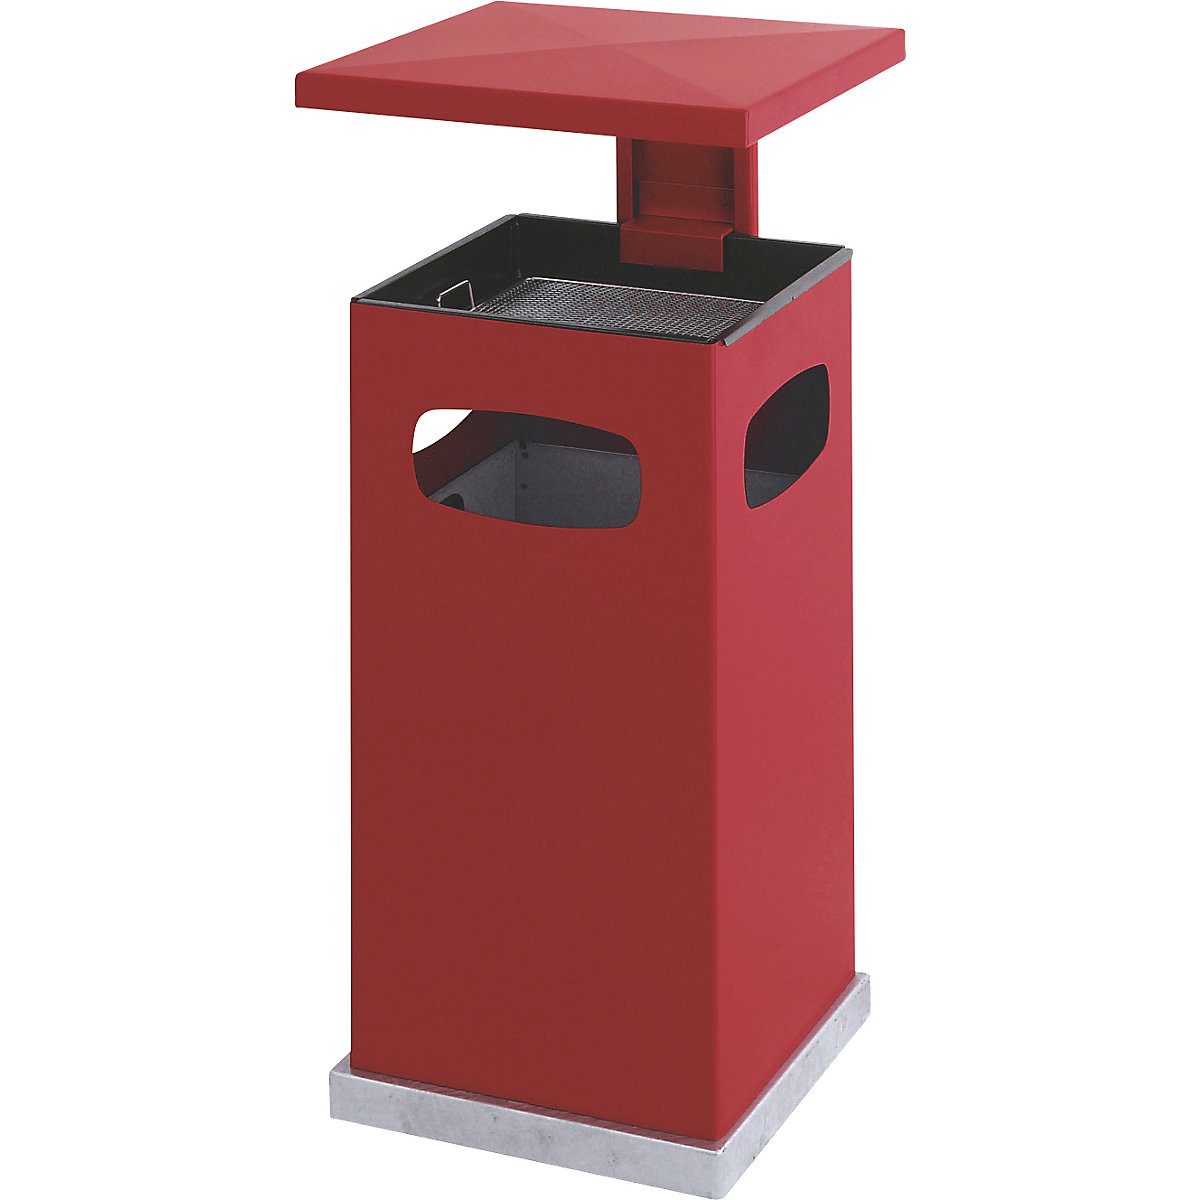 Zberač odpadkov s popolníkovou vložkou a ochrannou strieškou, objem 38 l, š x v x h 395 x 910 x 395 mm, ohnivo červená-5